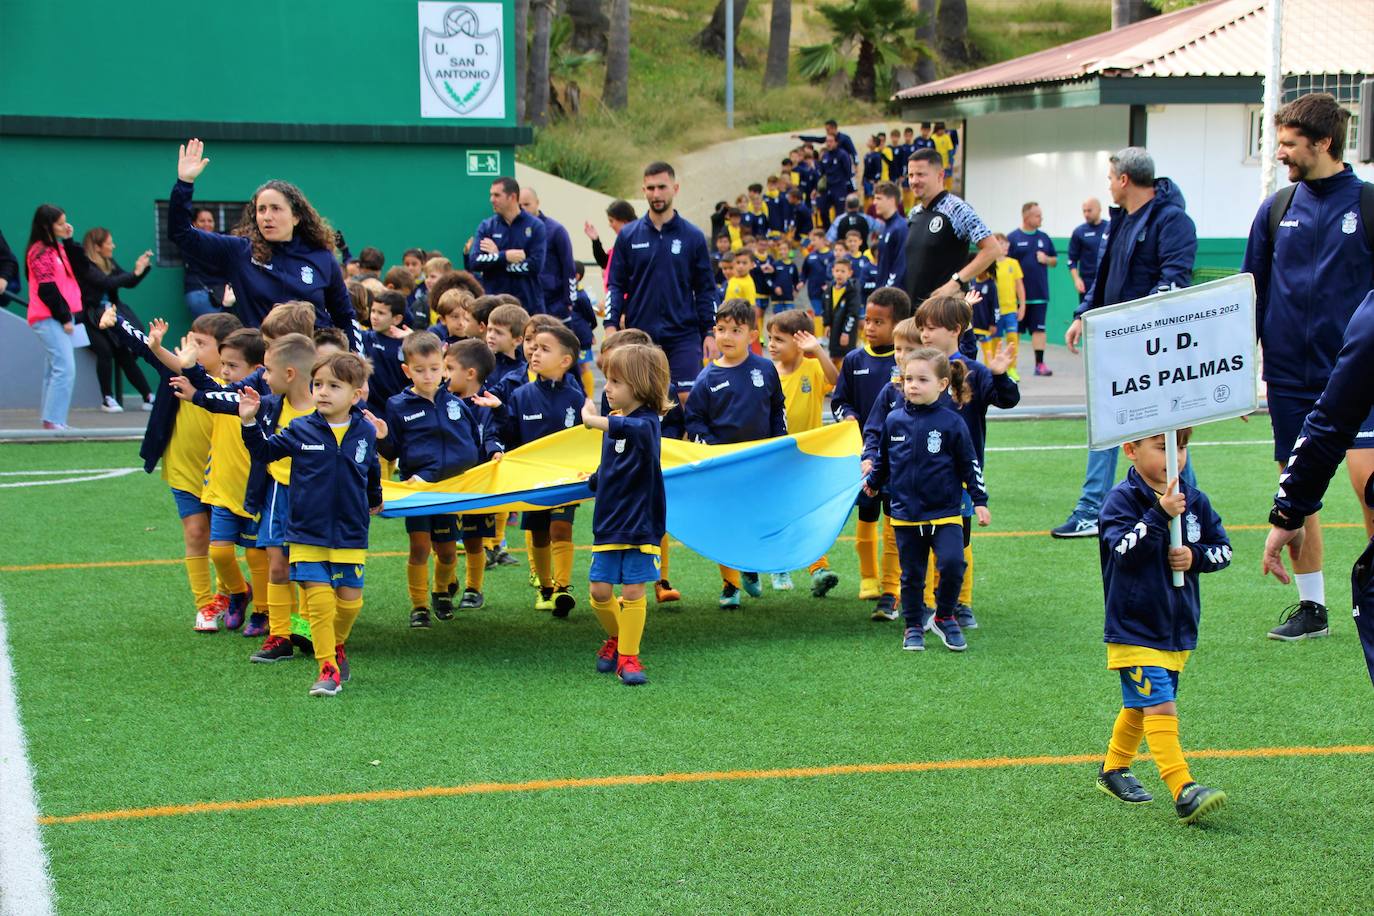 Imagen secundaria 1 - El Ayuntamiento pone en marcha una nueva edición de la Liga de Escuelas Municipales de Fútbol 8